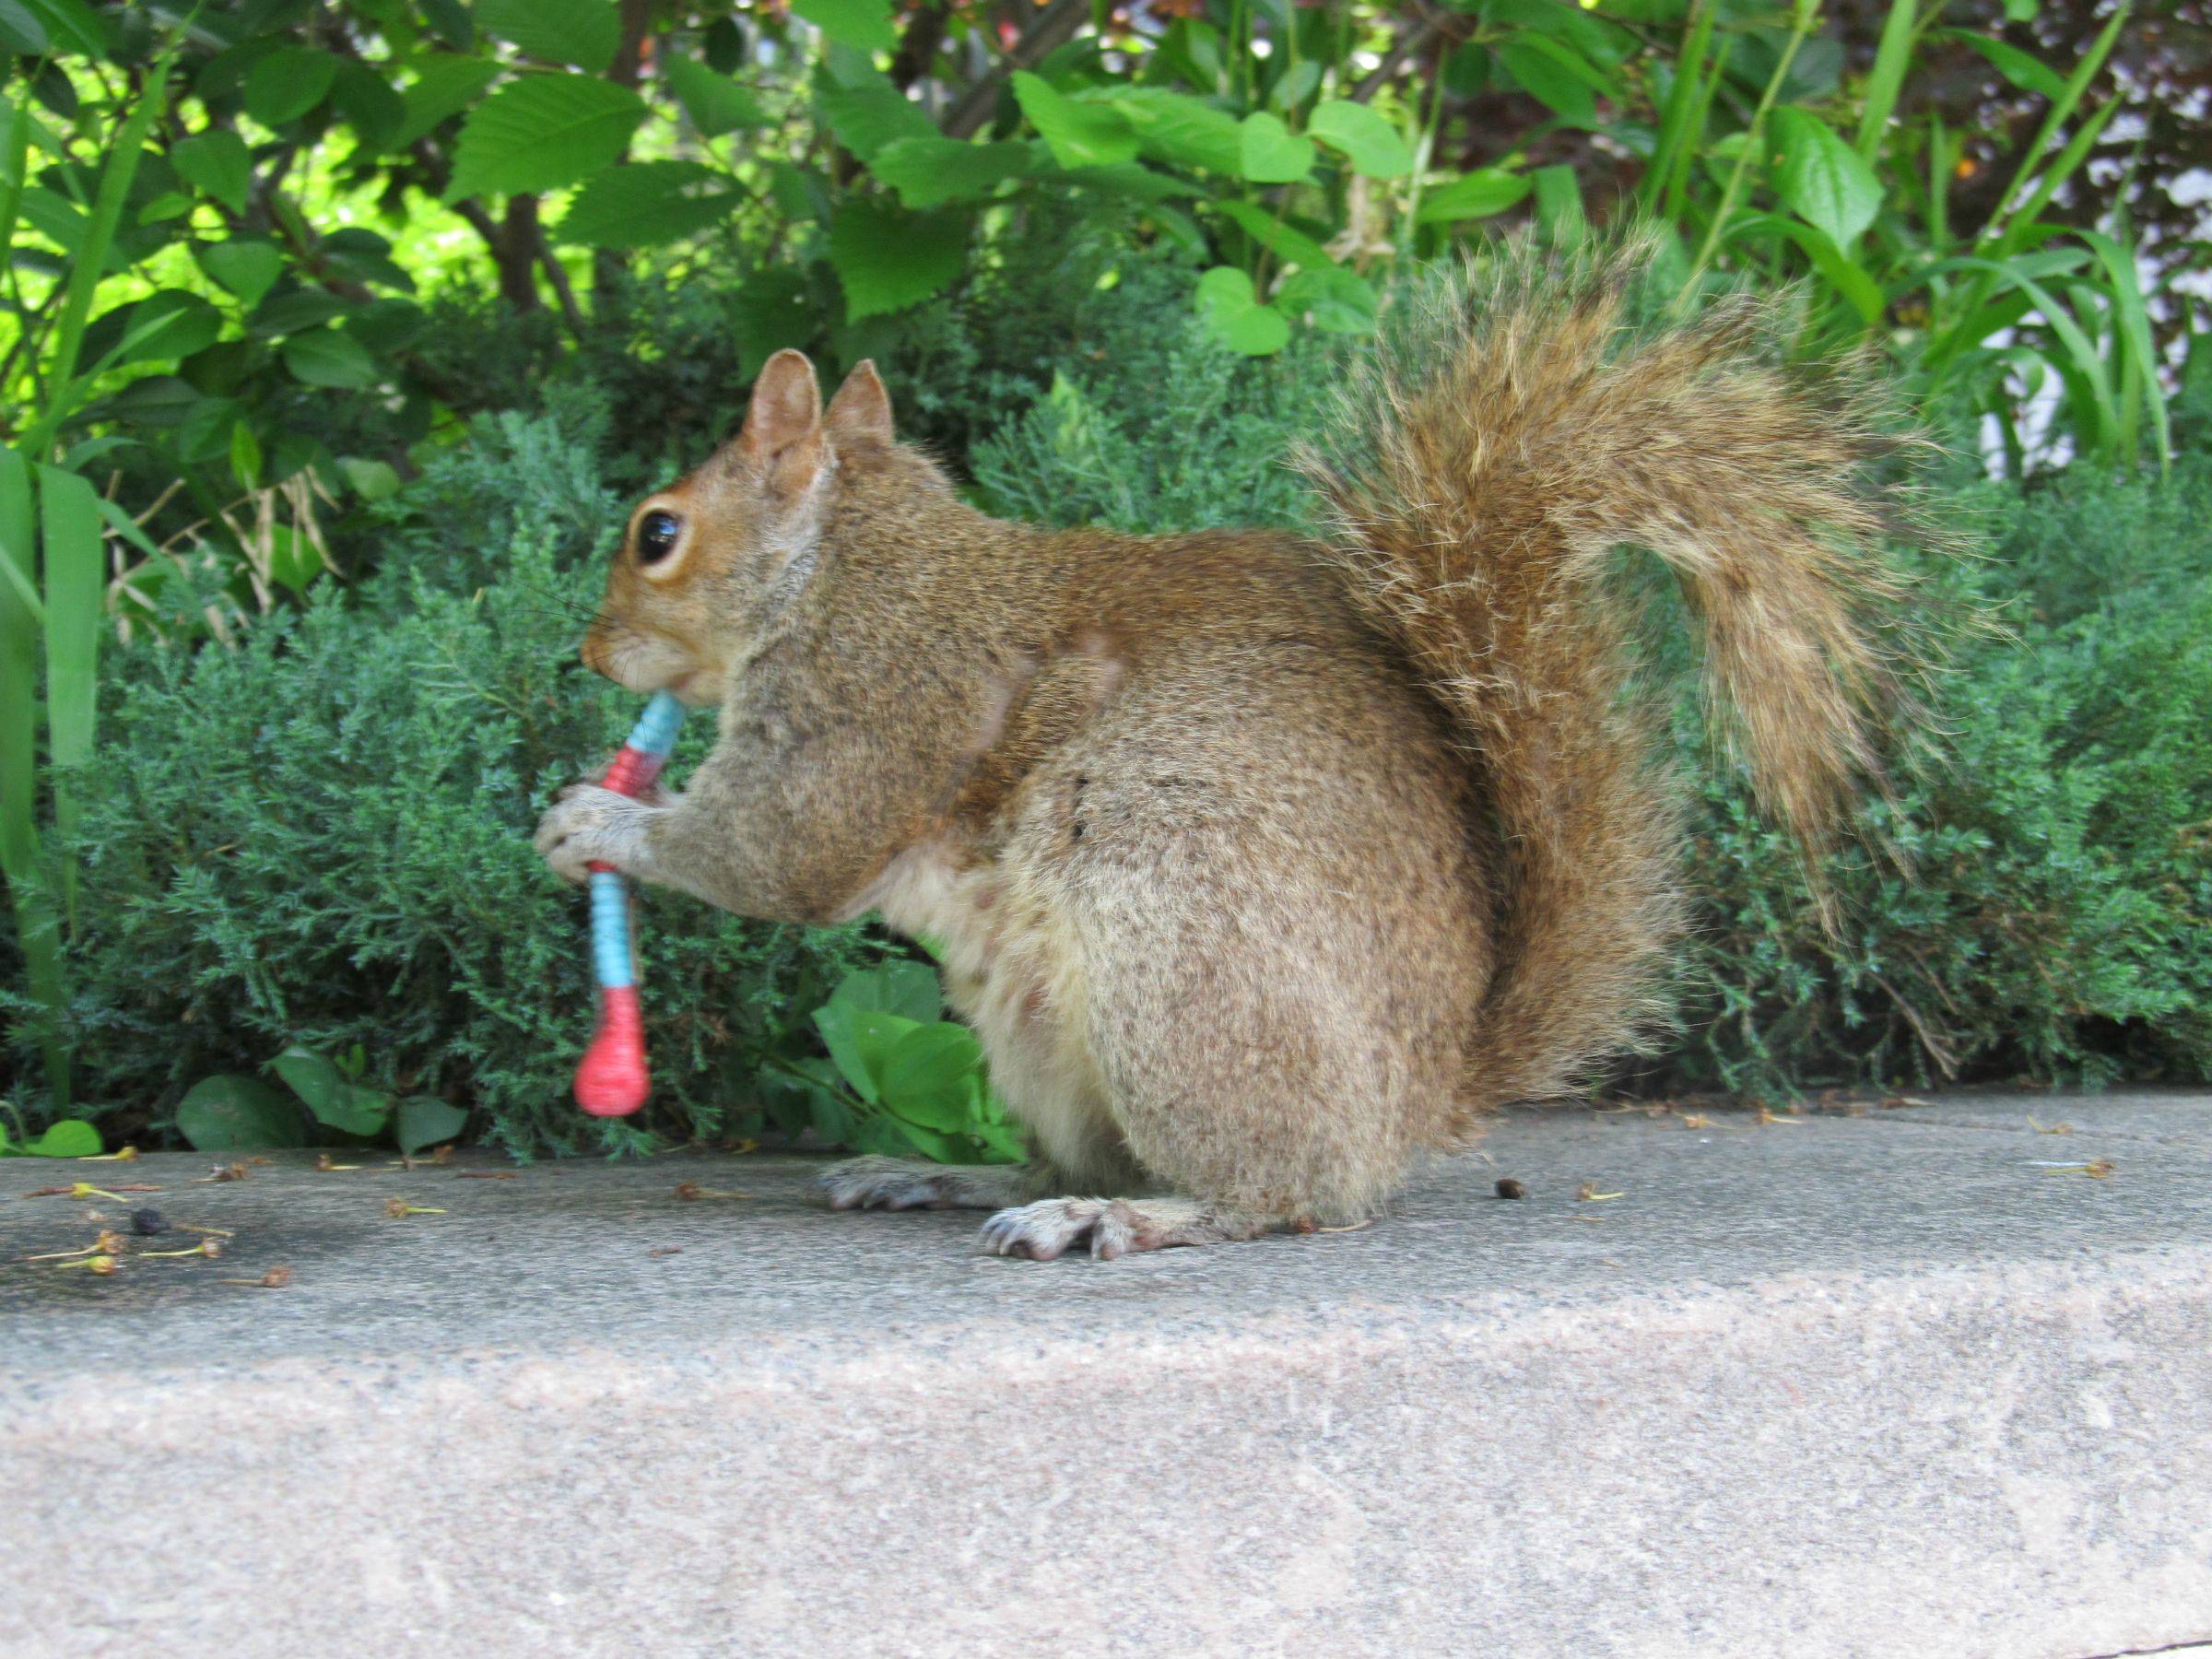 Squirrel Eating a Gummy Worm - Imgur